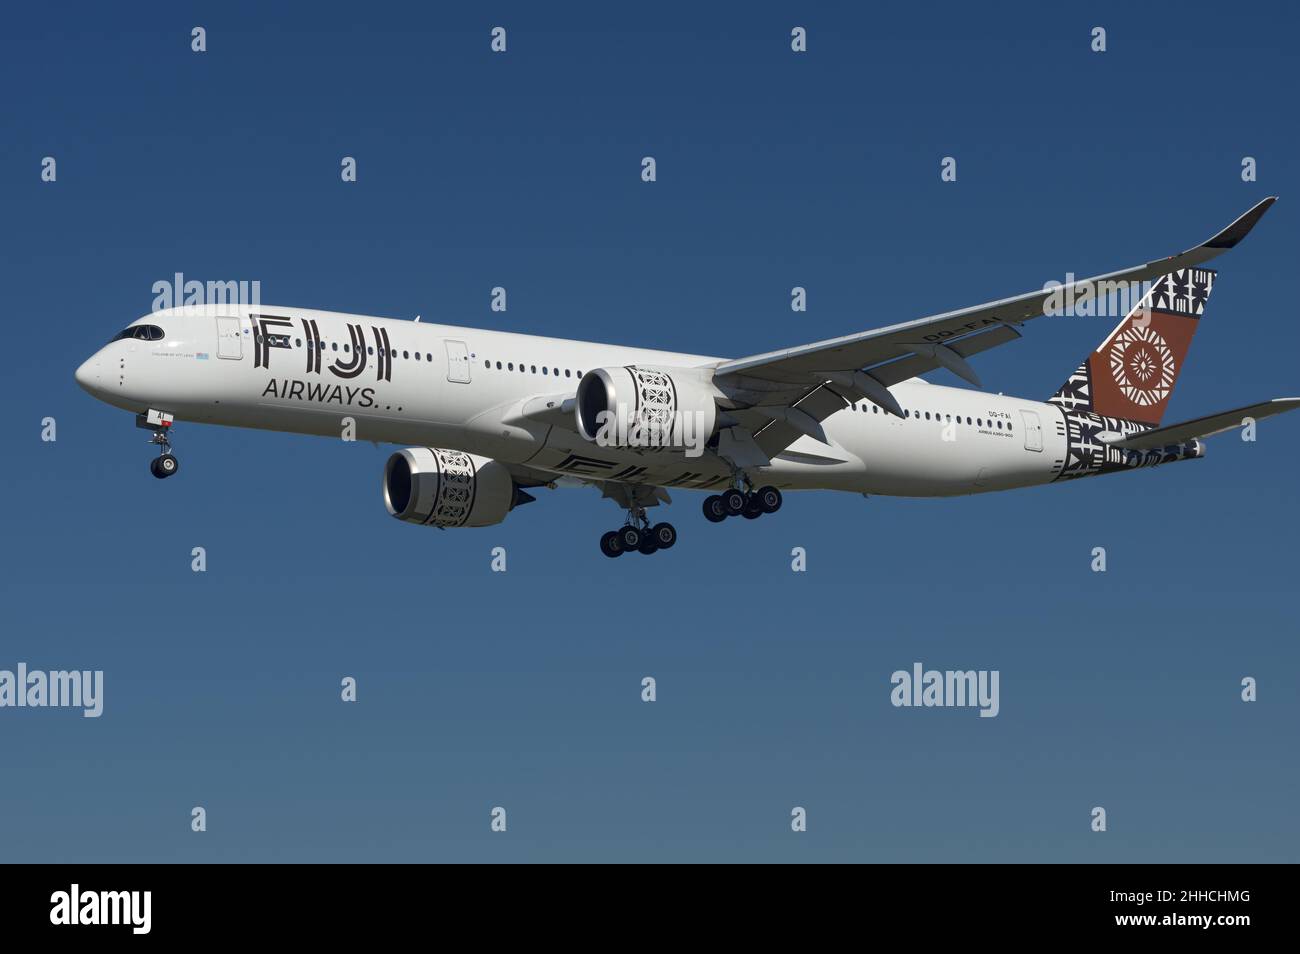 Fiji Airways Airbus A350-900 con registrazione DQ-fai mostrato avvicinarsi all'aeroporto internazionale di Los Angeles (LAX). Foto Stock